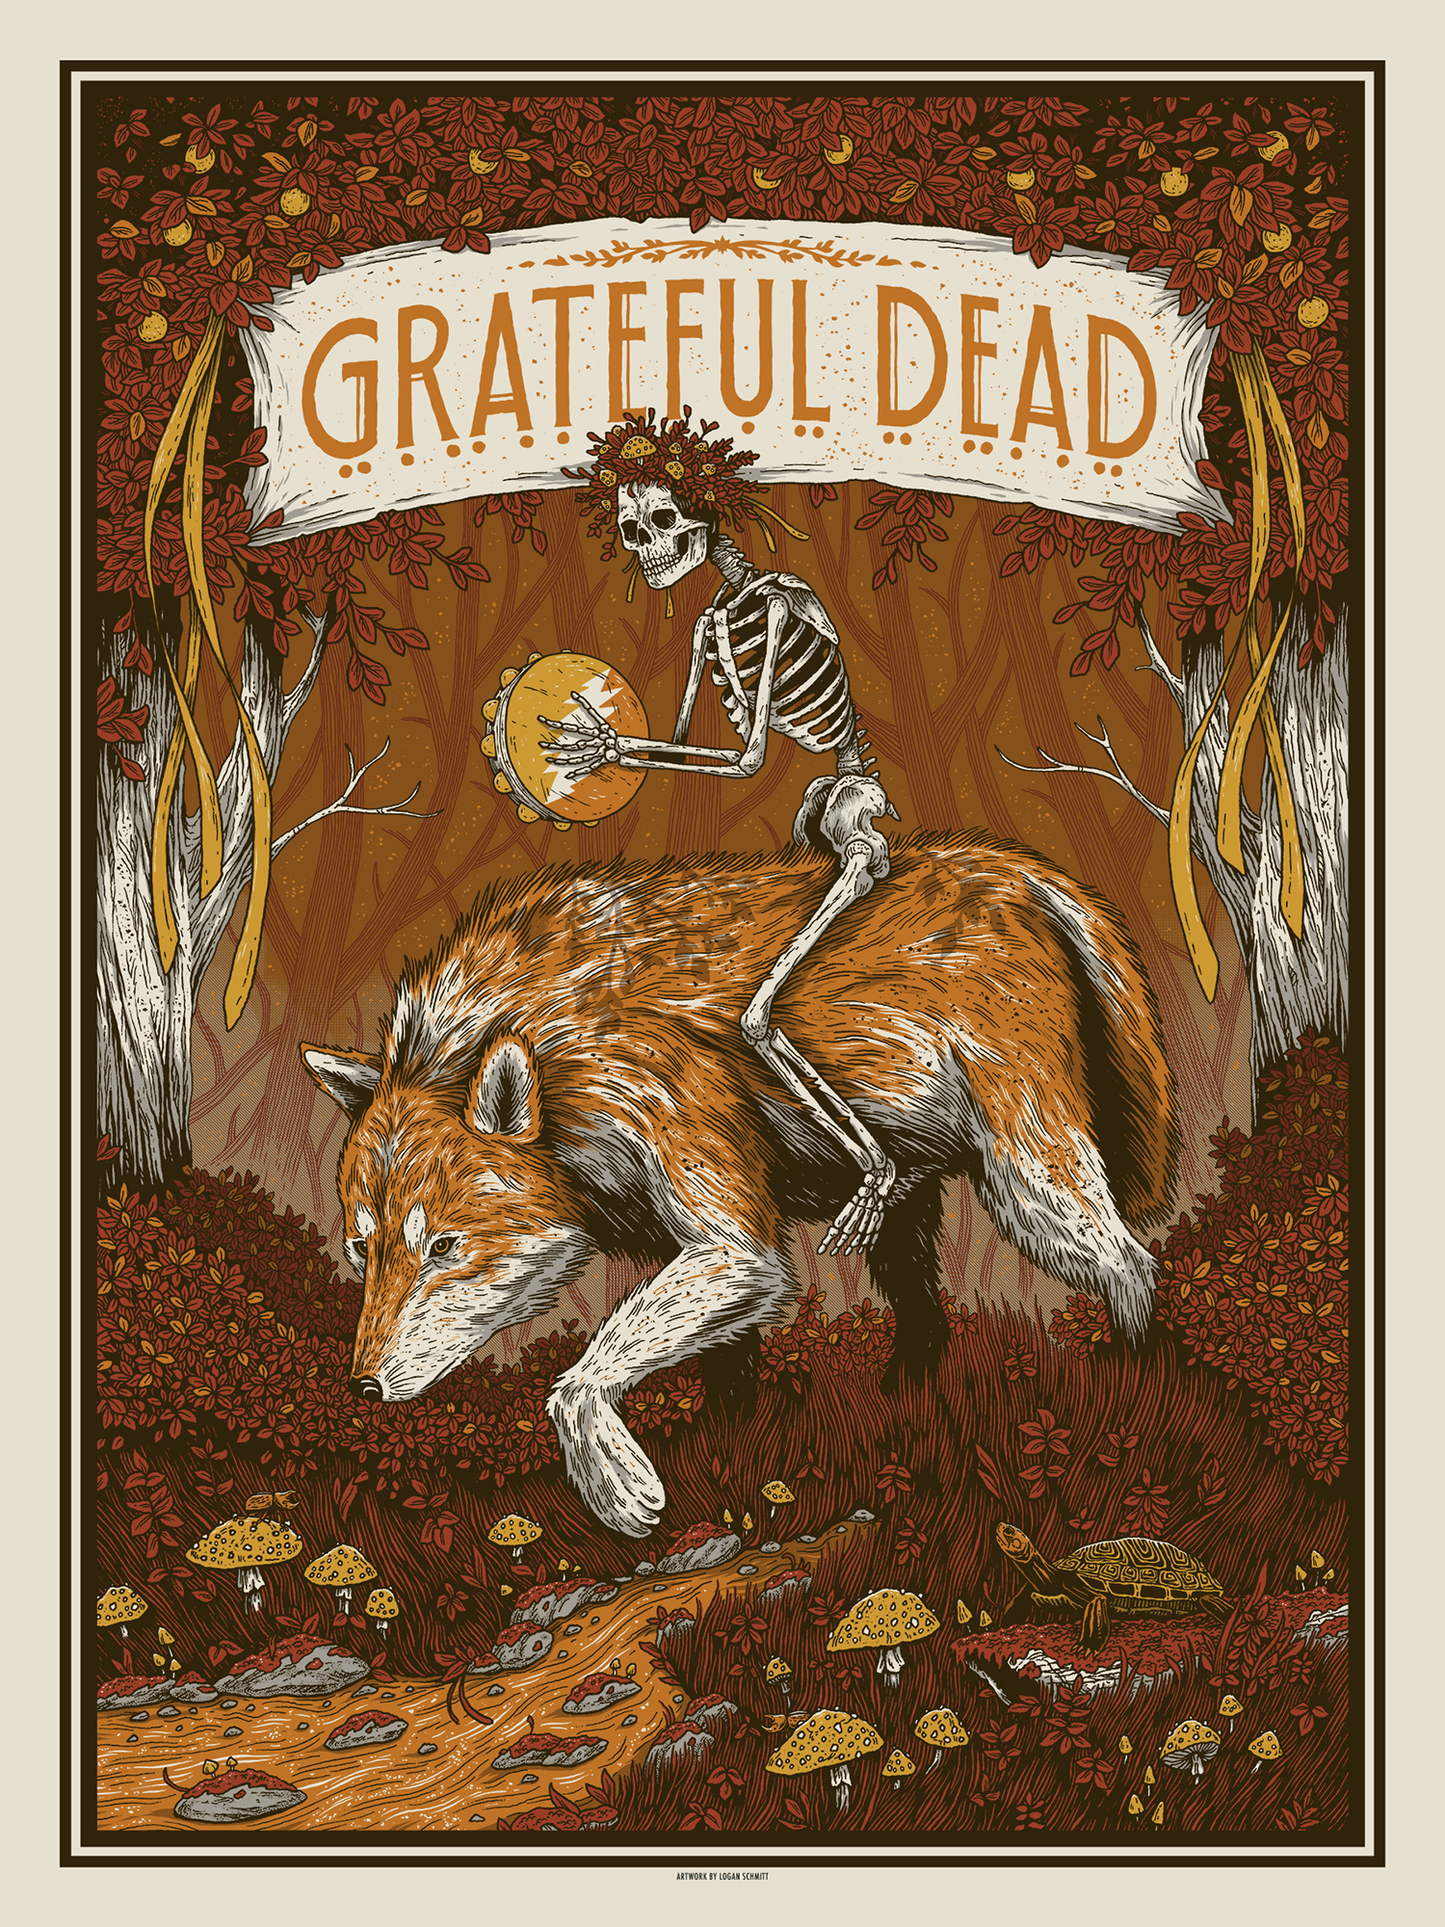 Logan Schmitt "Grateful Dead" Variant B